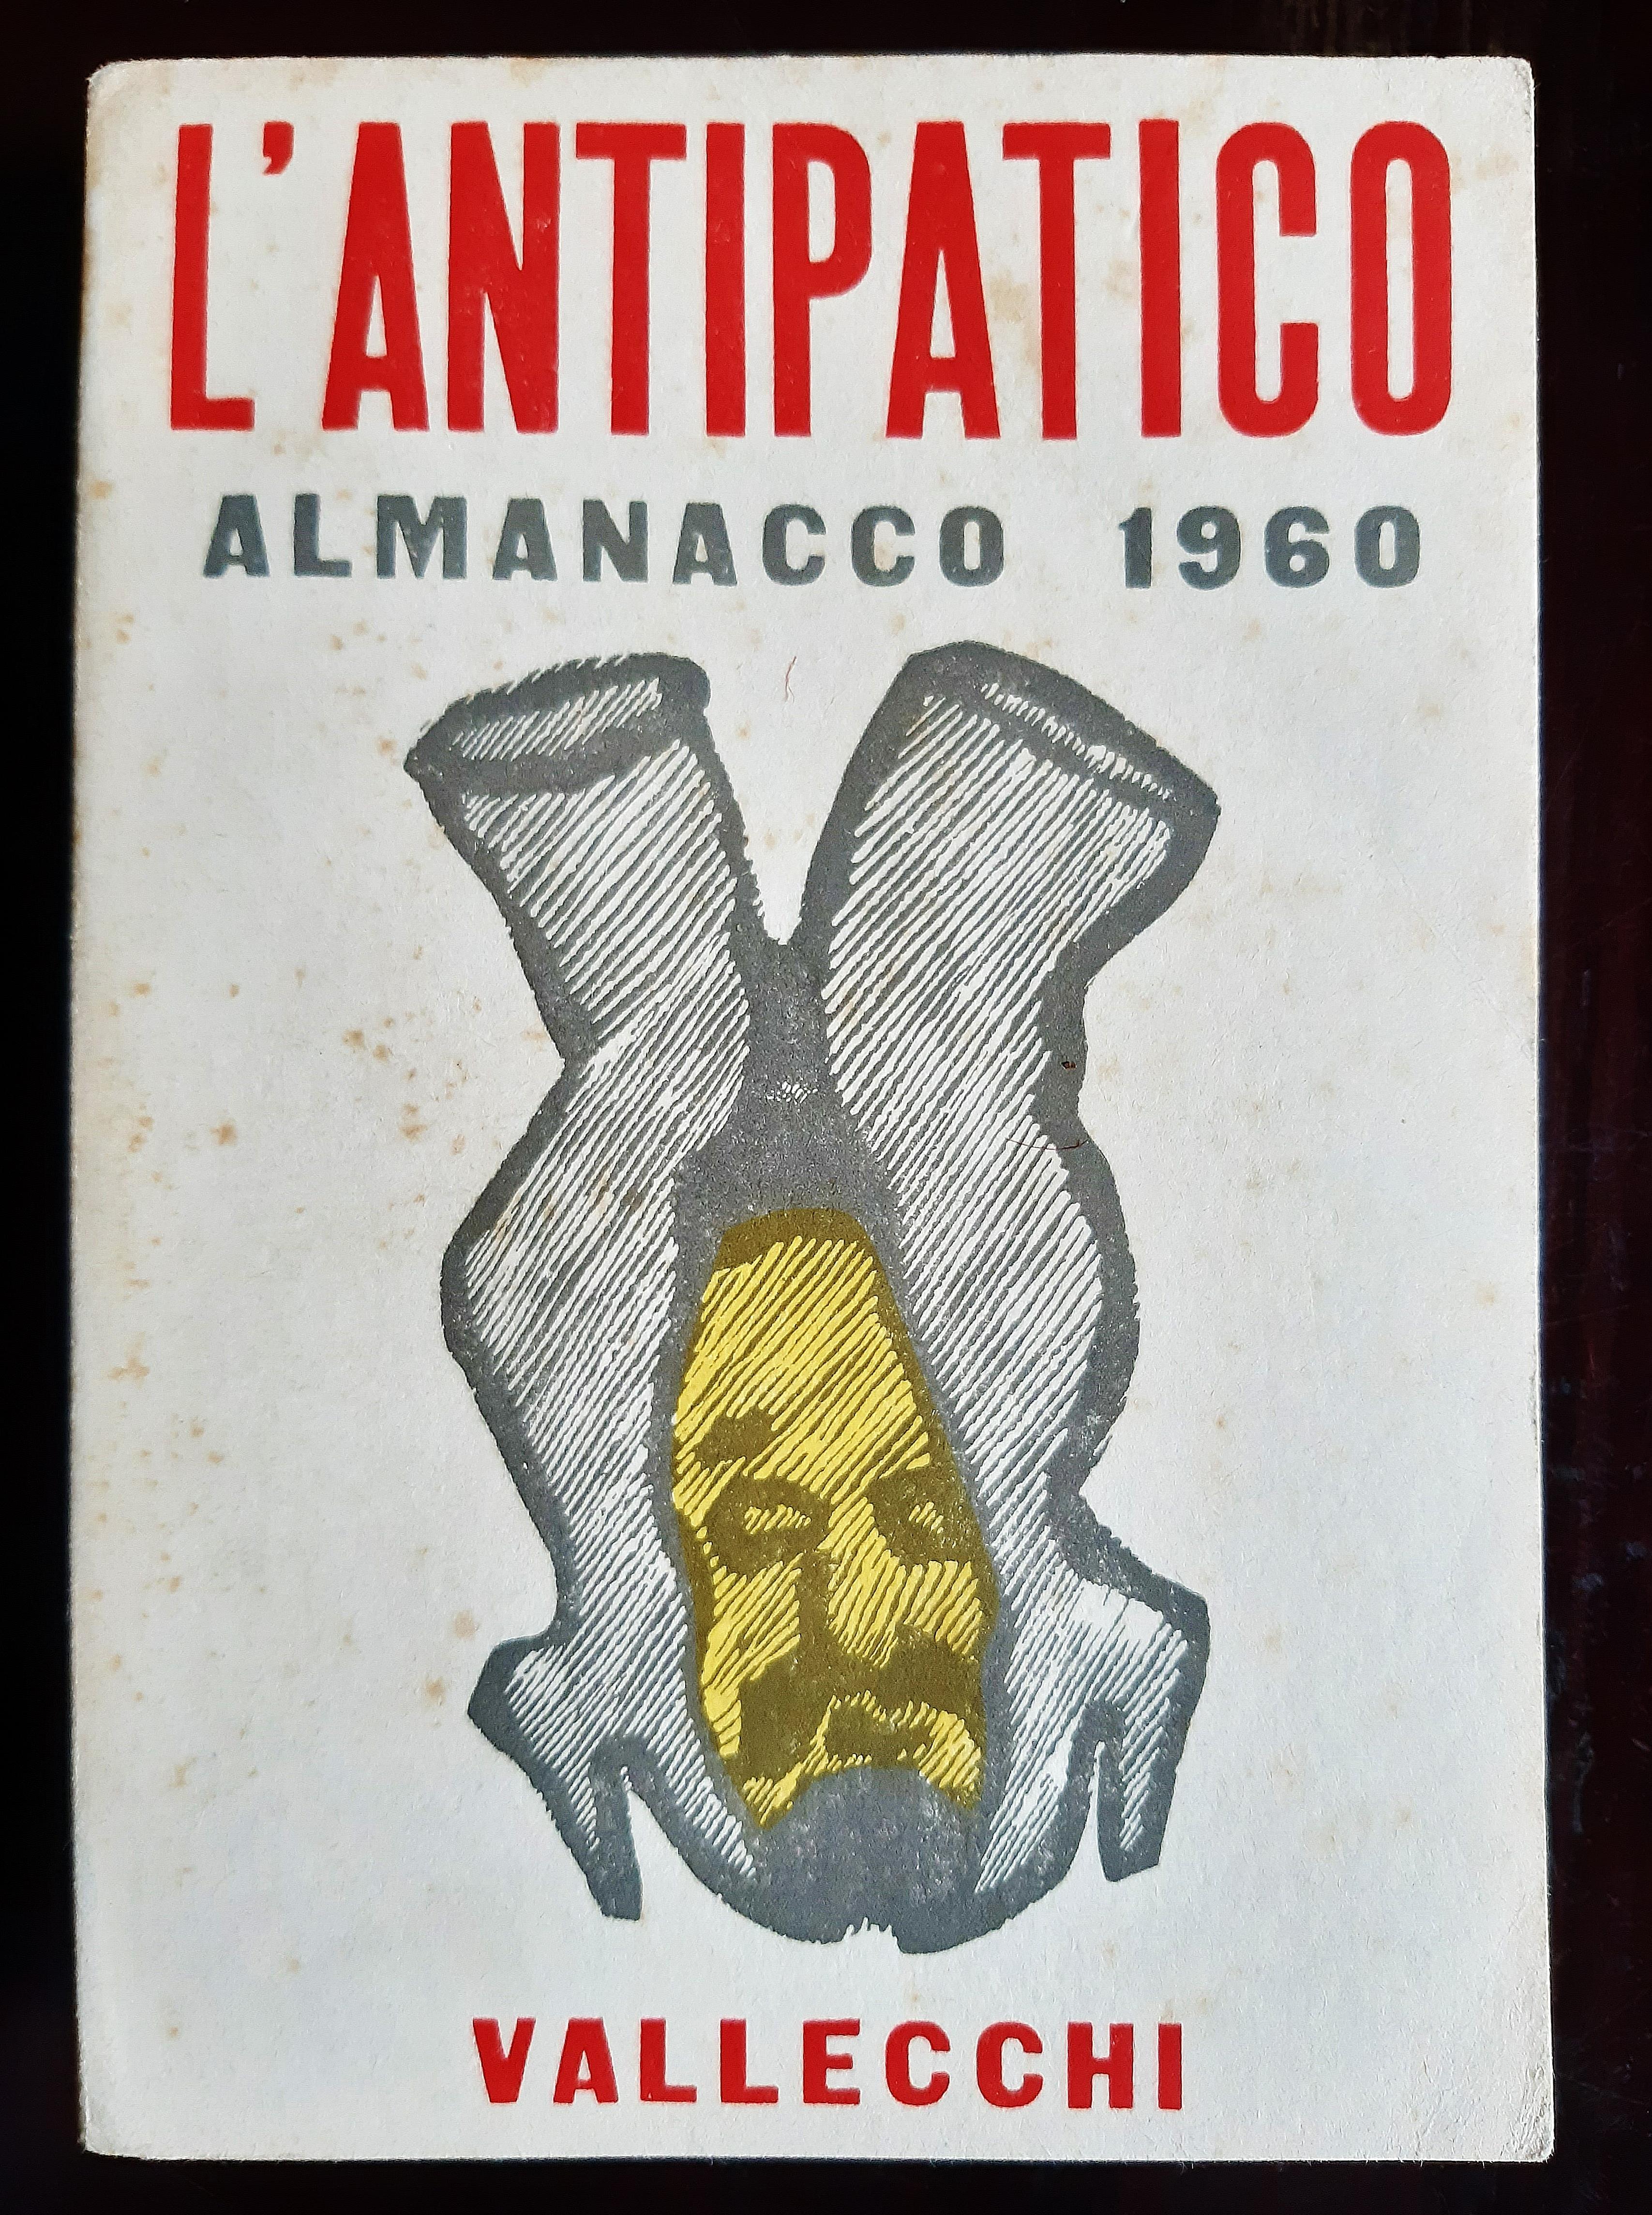 L'Antipatico - Almanacco per il 1960 est un livre original moderne et rare écrit par Italo Cremona et illustré par Mino Maccari (Sienne,  1898 - Rome, 1989) en 1959.

Première édition originale.

Publié par Vallecchi, Florence.

Format : in 8°. Les